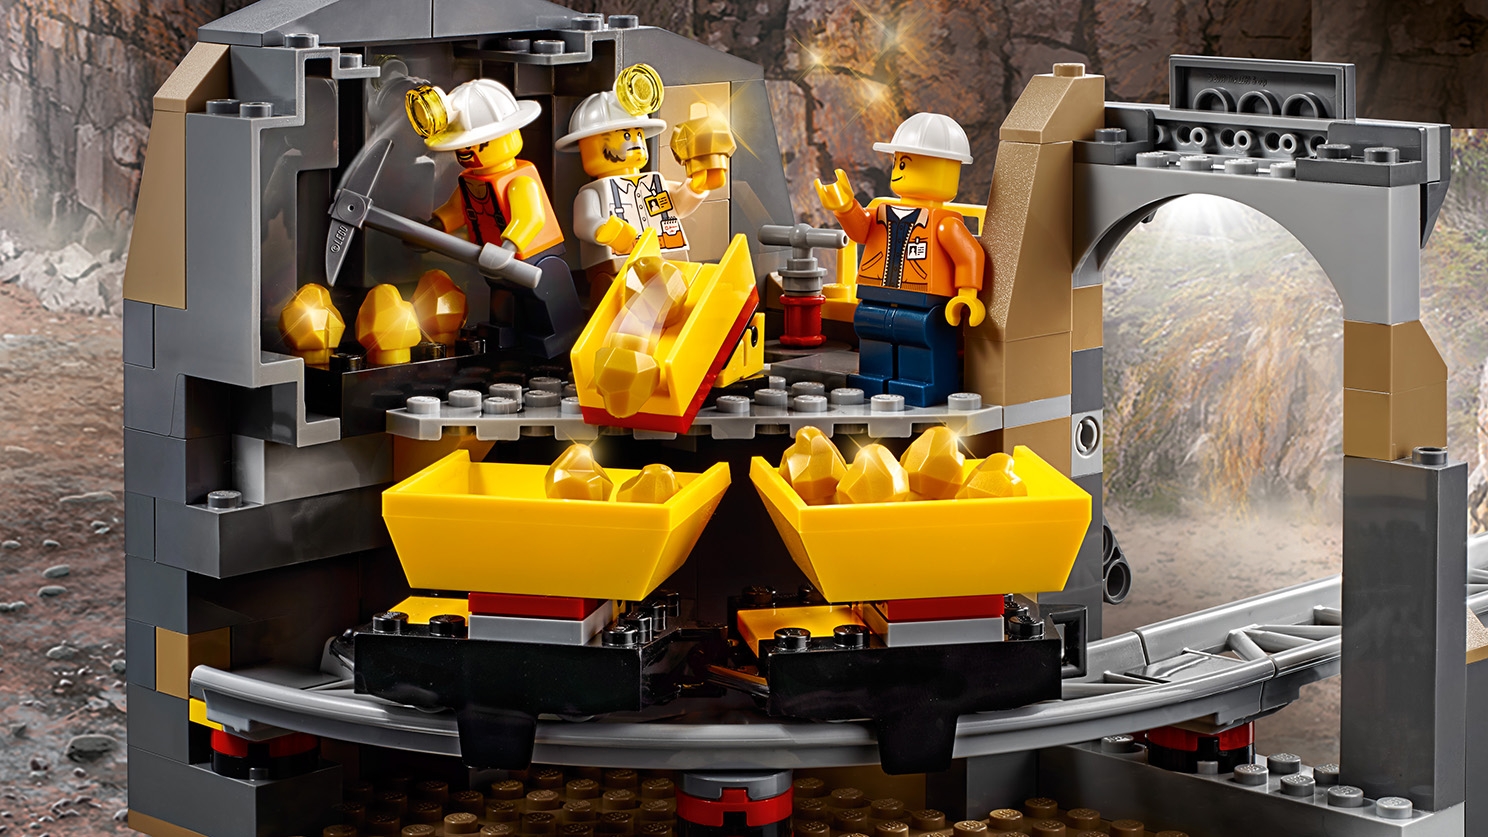 ゴールドハント 採掘場 60188 - レゴ®シティ セット - LEGO.comキッズ